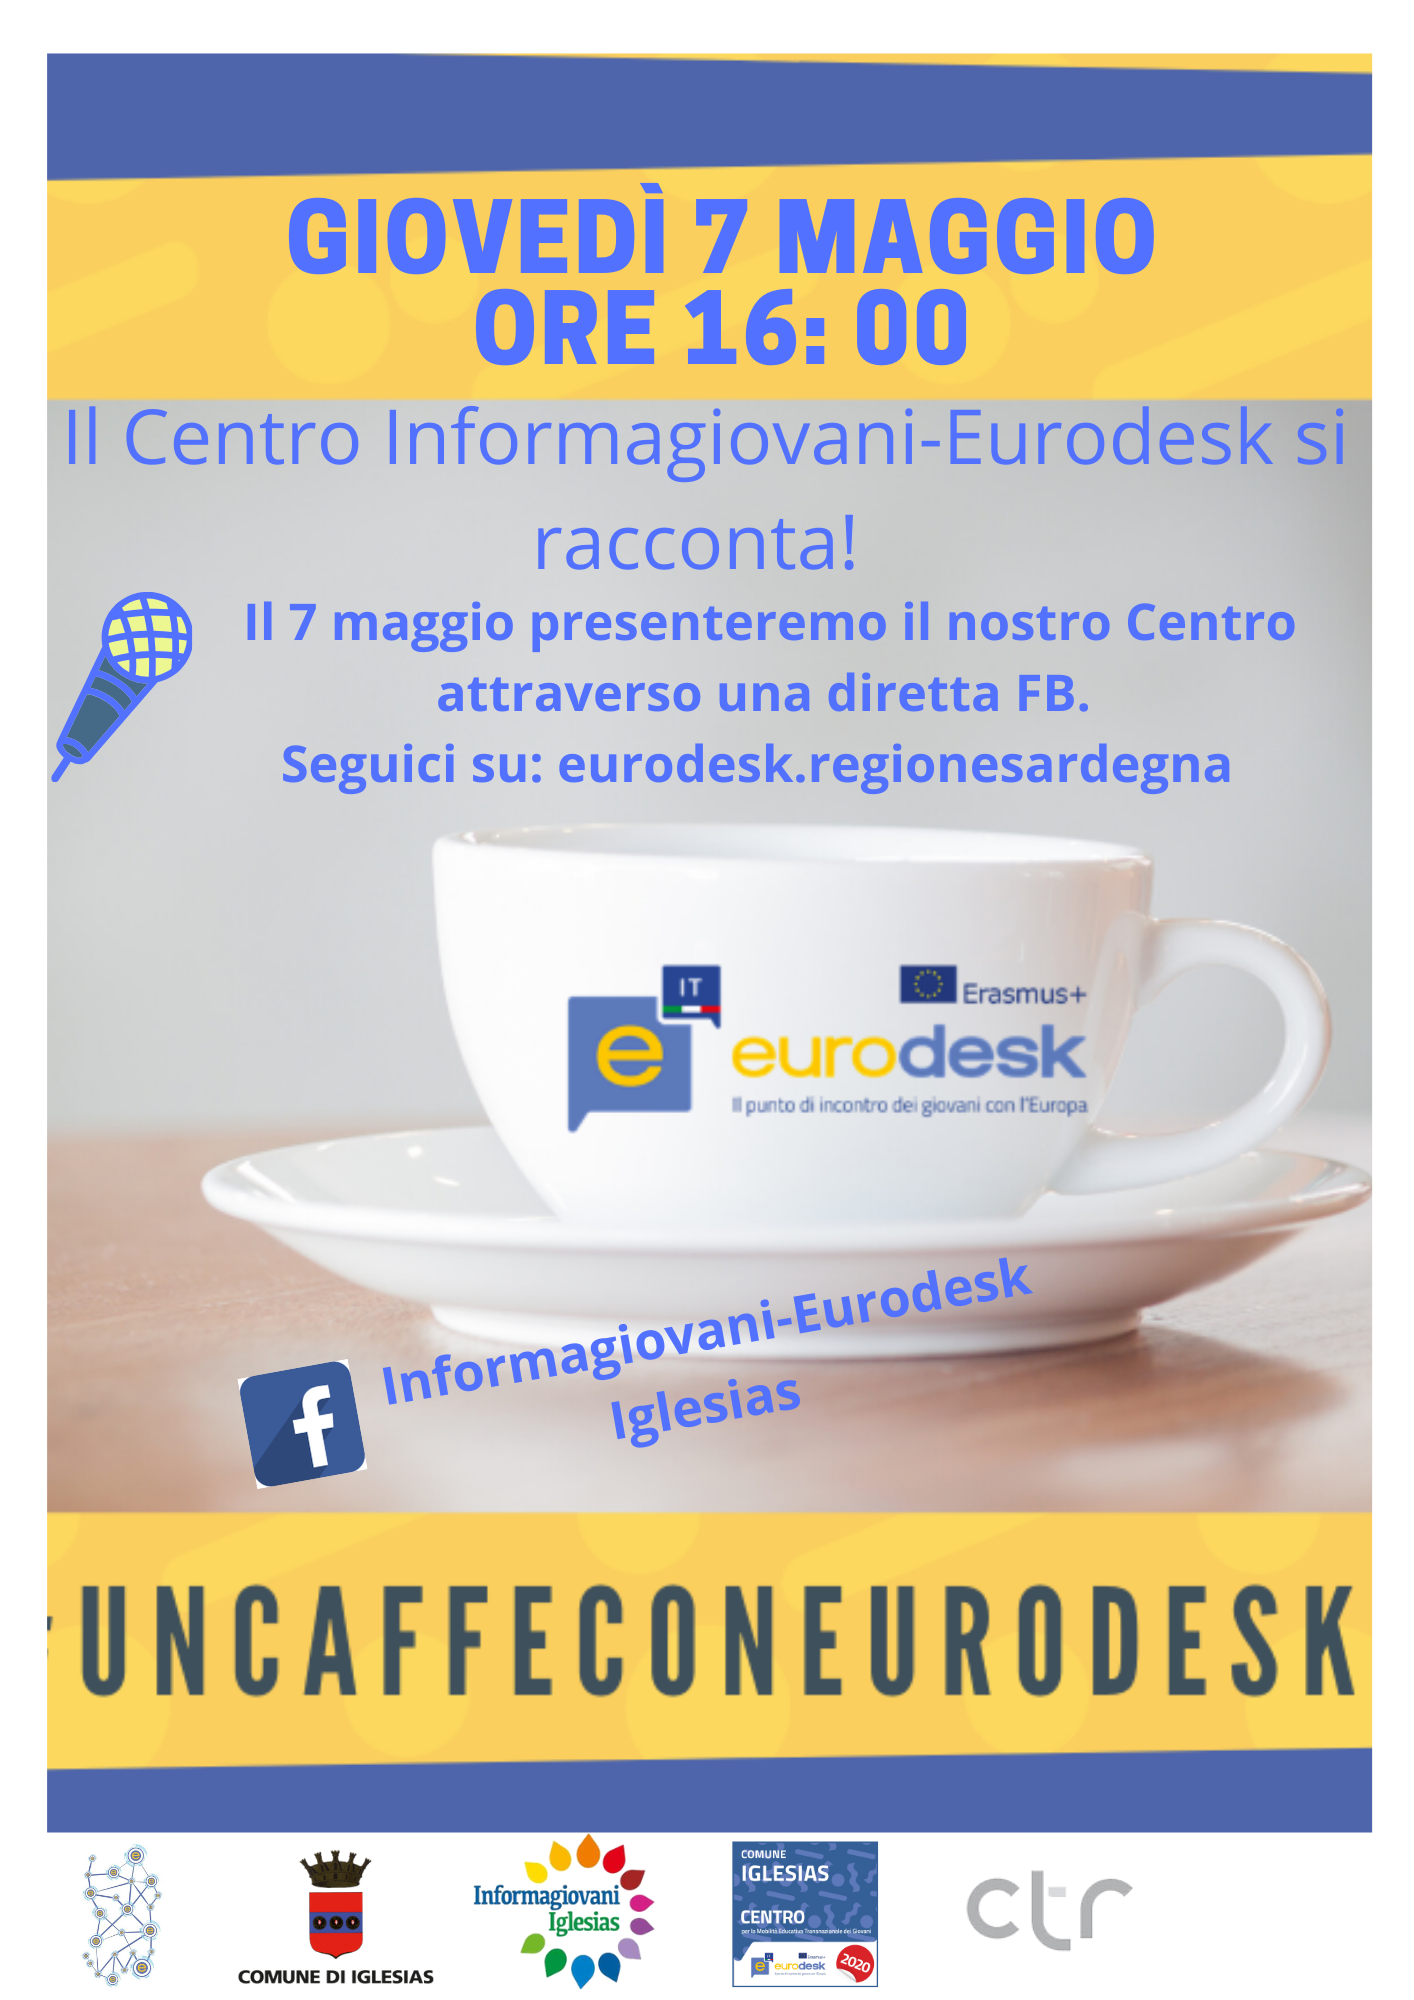 Un caffè con Eurodesk: Giovedì 7 maggio ore 16:00